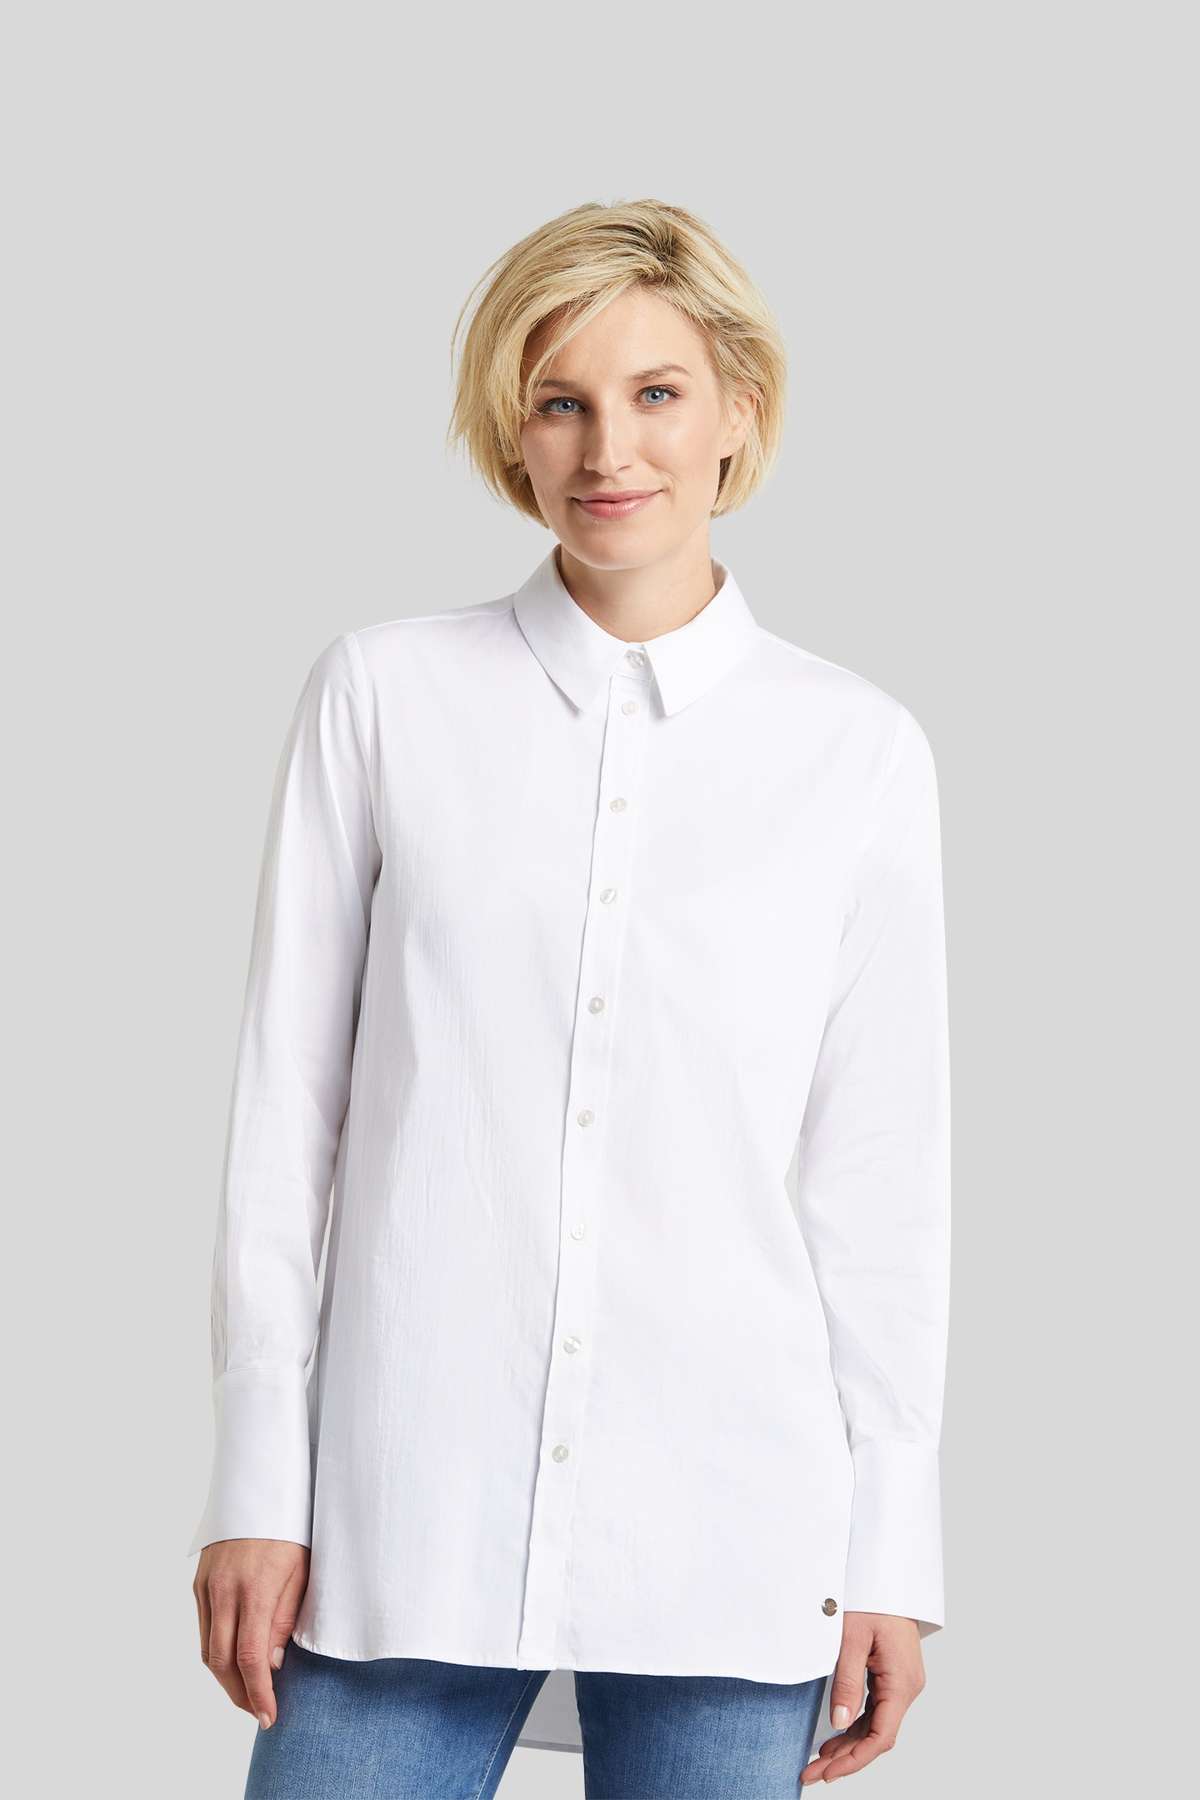 Блузка-рубашка из эластичной хлопчатобумажной ткани.